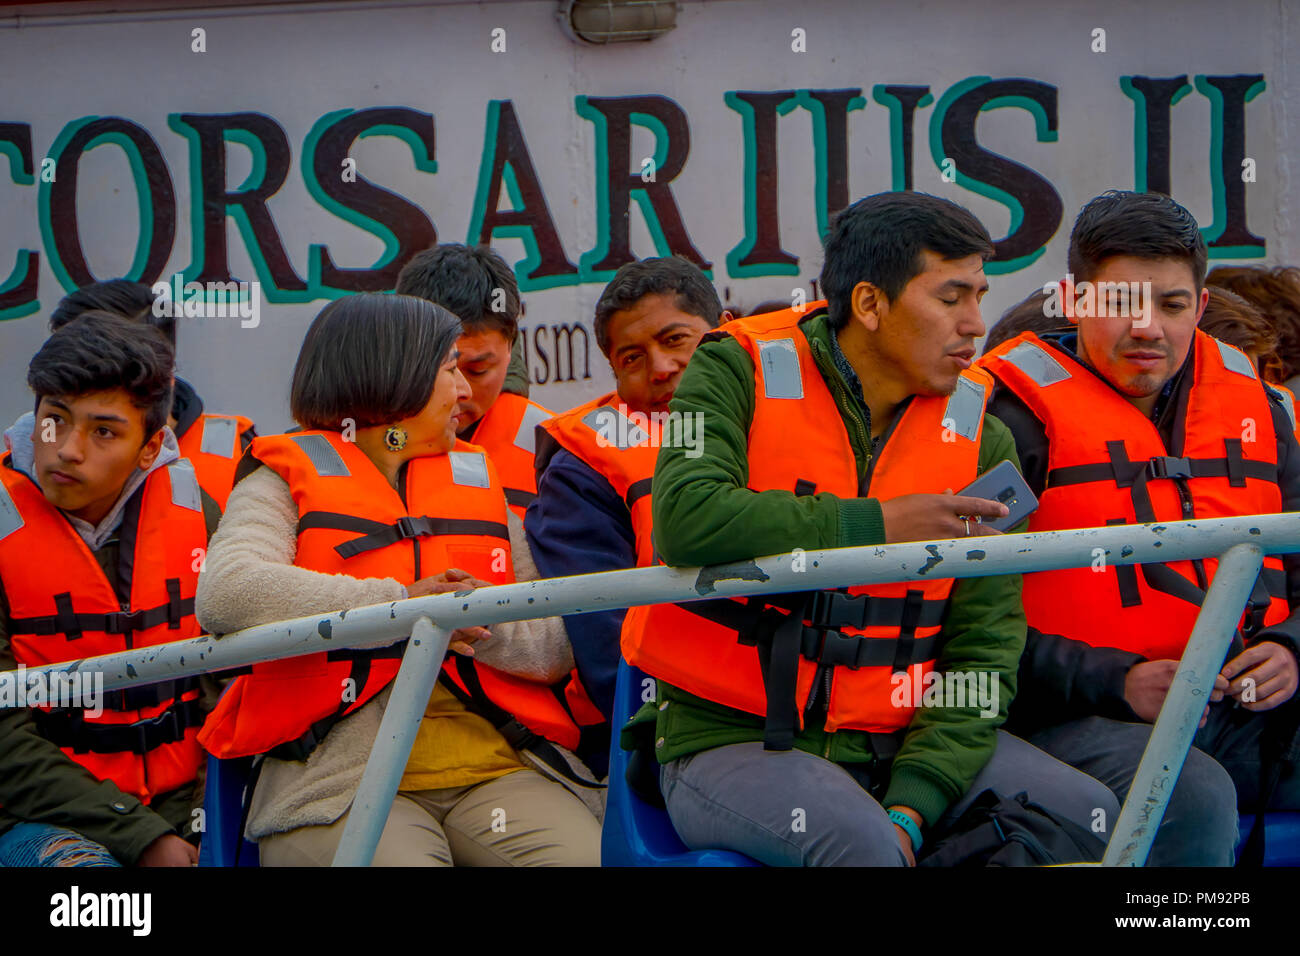 VALPARAISO, CHILI - 15 septembre, 2018 : vue extérieure de touristes non identifié portant un gilet à l'intérieur d'un bateau de tourisme au Port de Valparaiso, sur la côte du Pacifique Banque D'Images